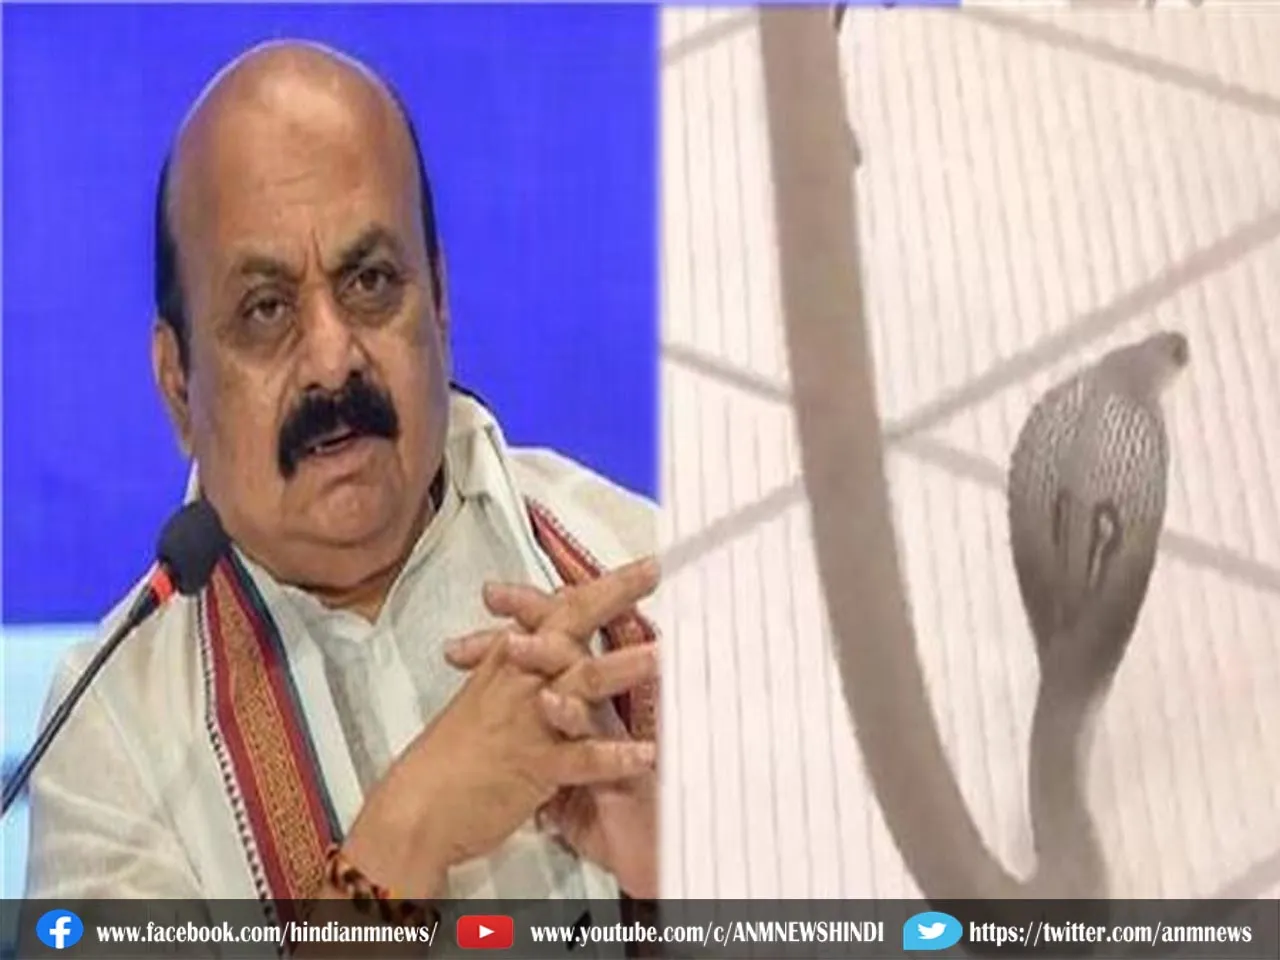 Karnataka Election: बैठक के दौरान दफ्तर में किसे डसने पंहुचा सांप, देखे वीडियो